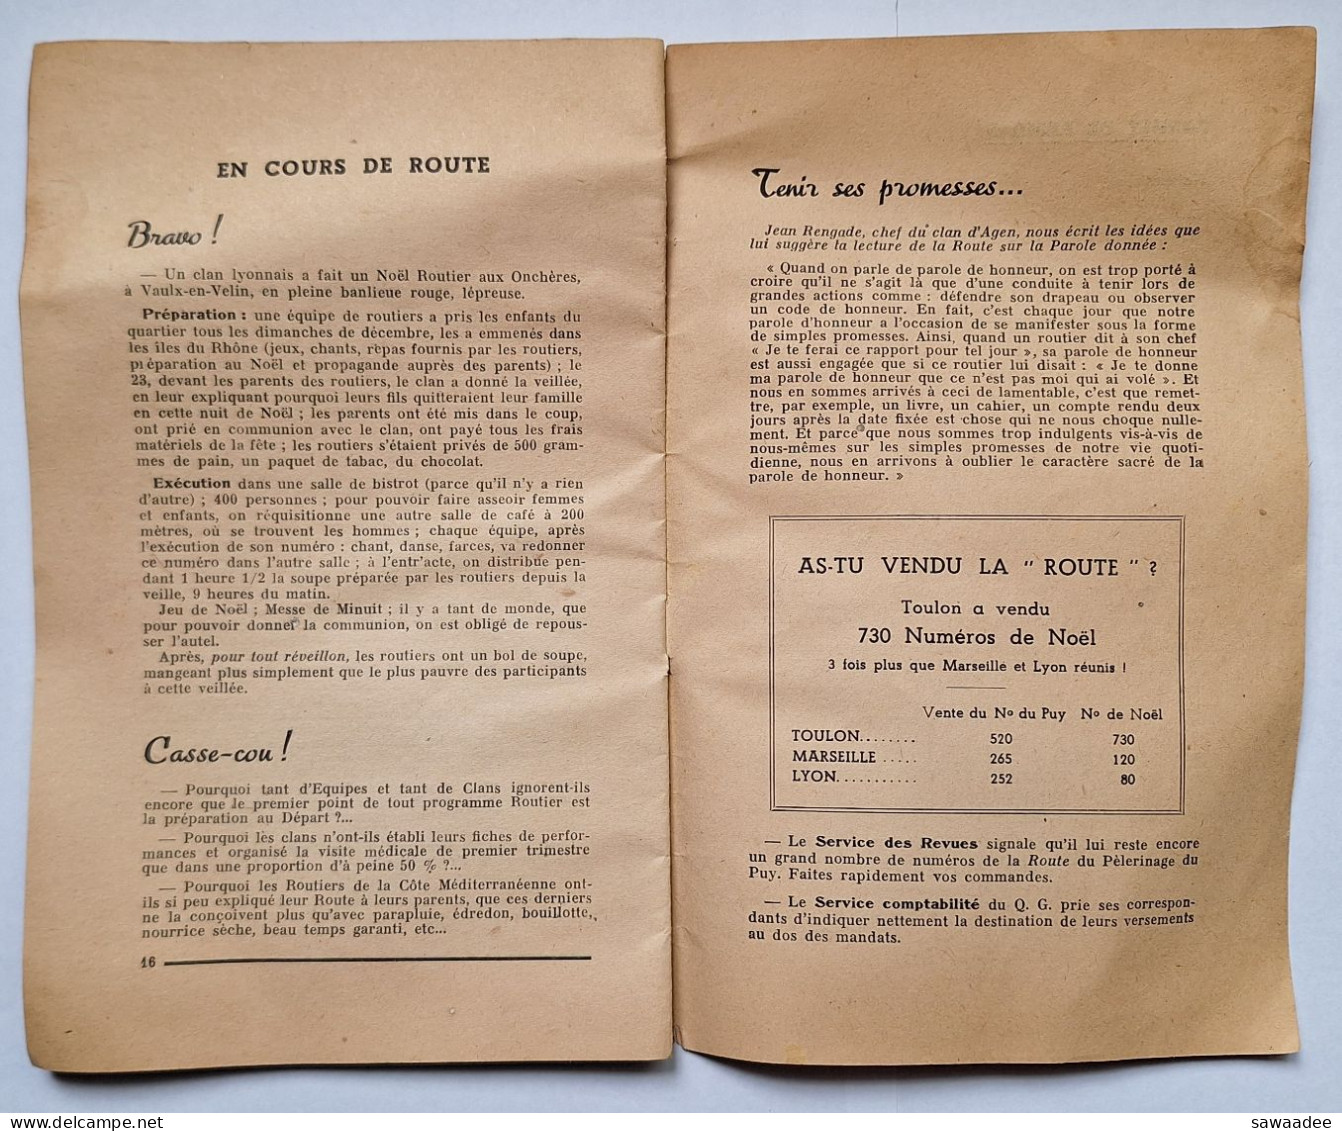 SCOUTISME - FRANCE - LIVRET - LA ROUTE DES COUTS DE FRANCE - TA VOCATION V - 01/03/1943 - 16 PAGES - Scouting